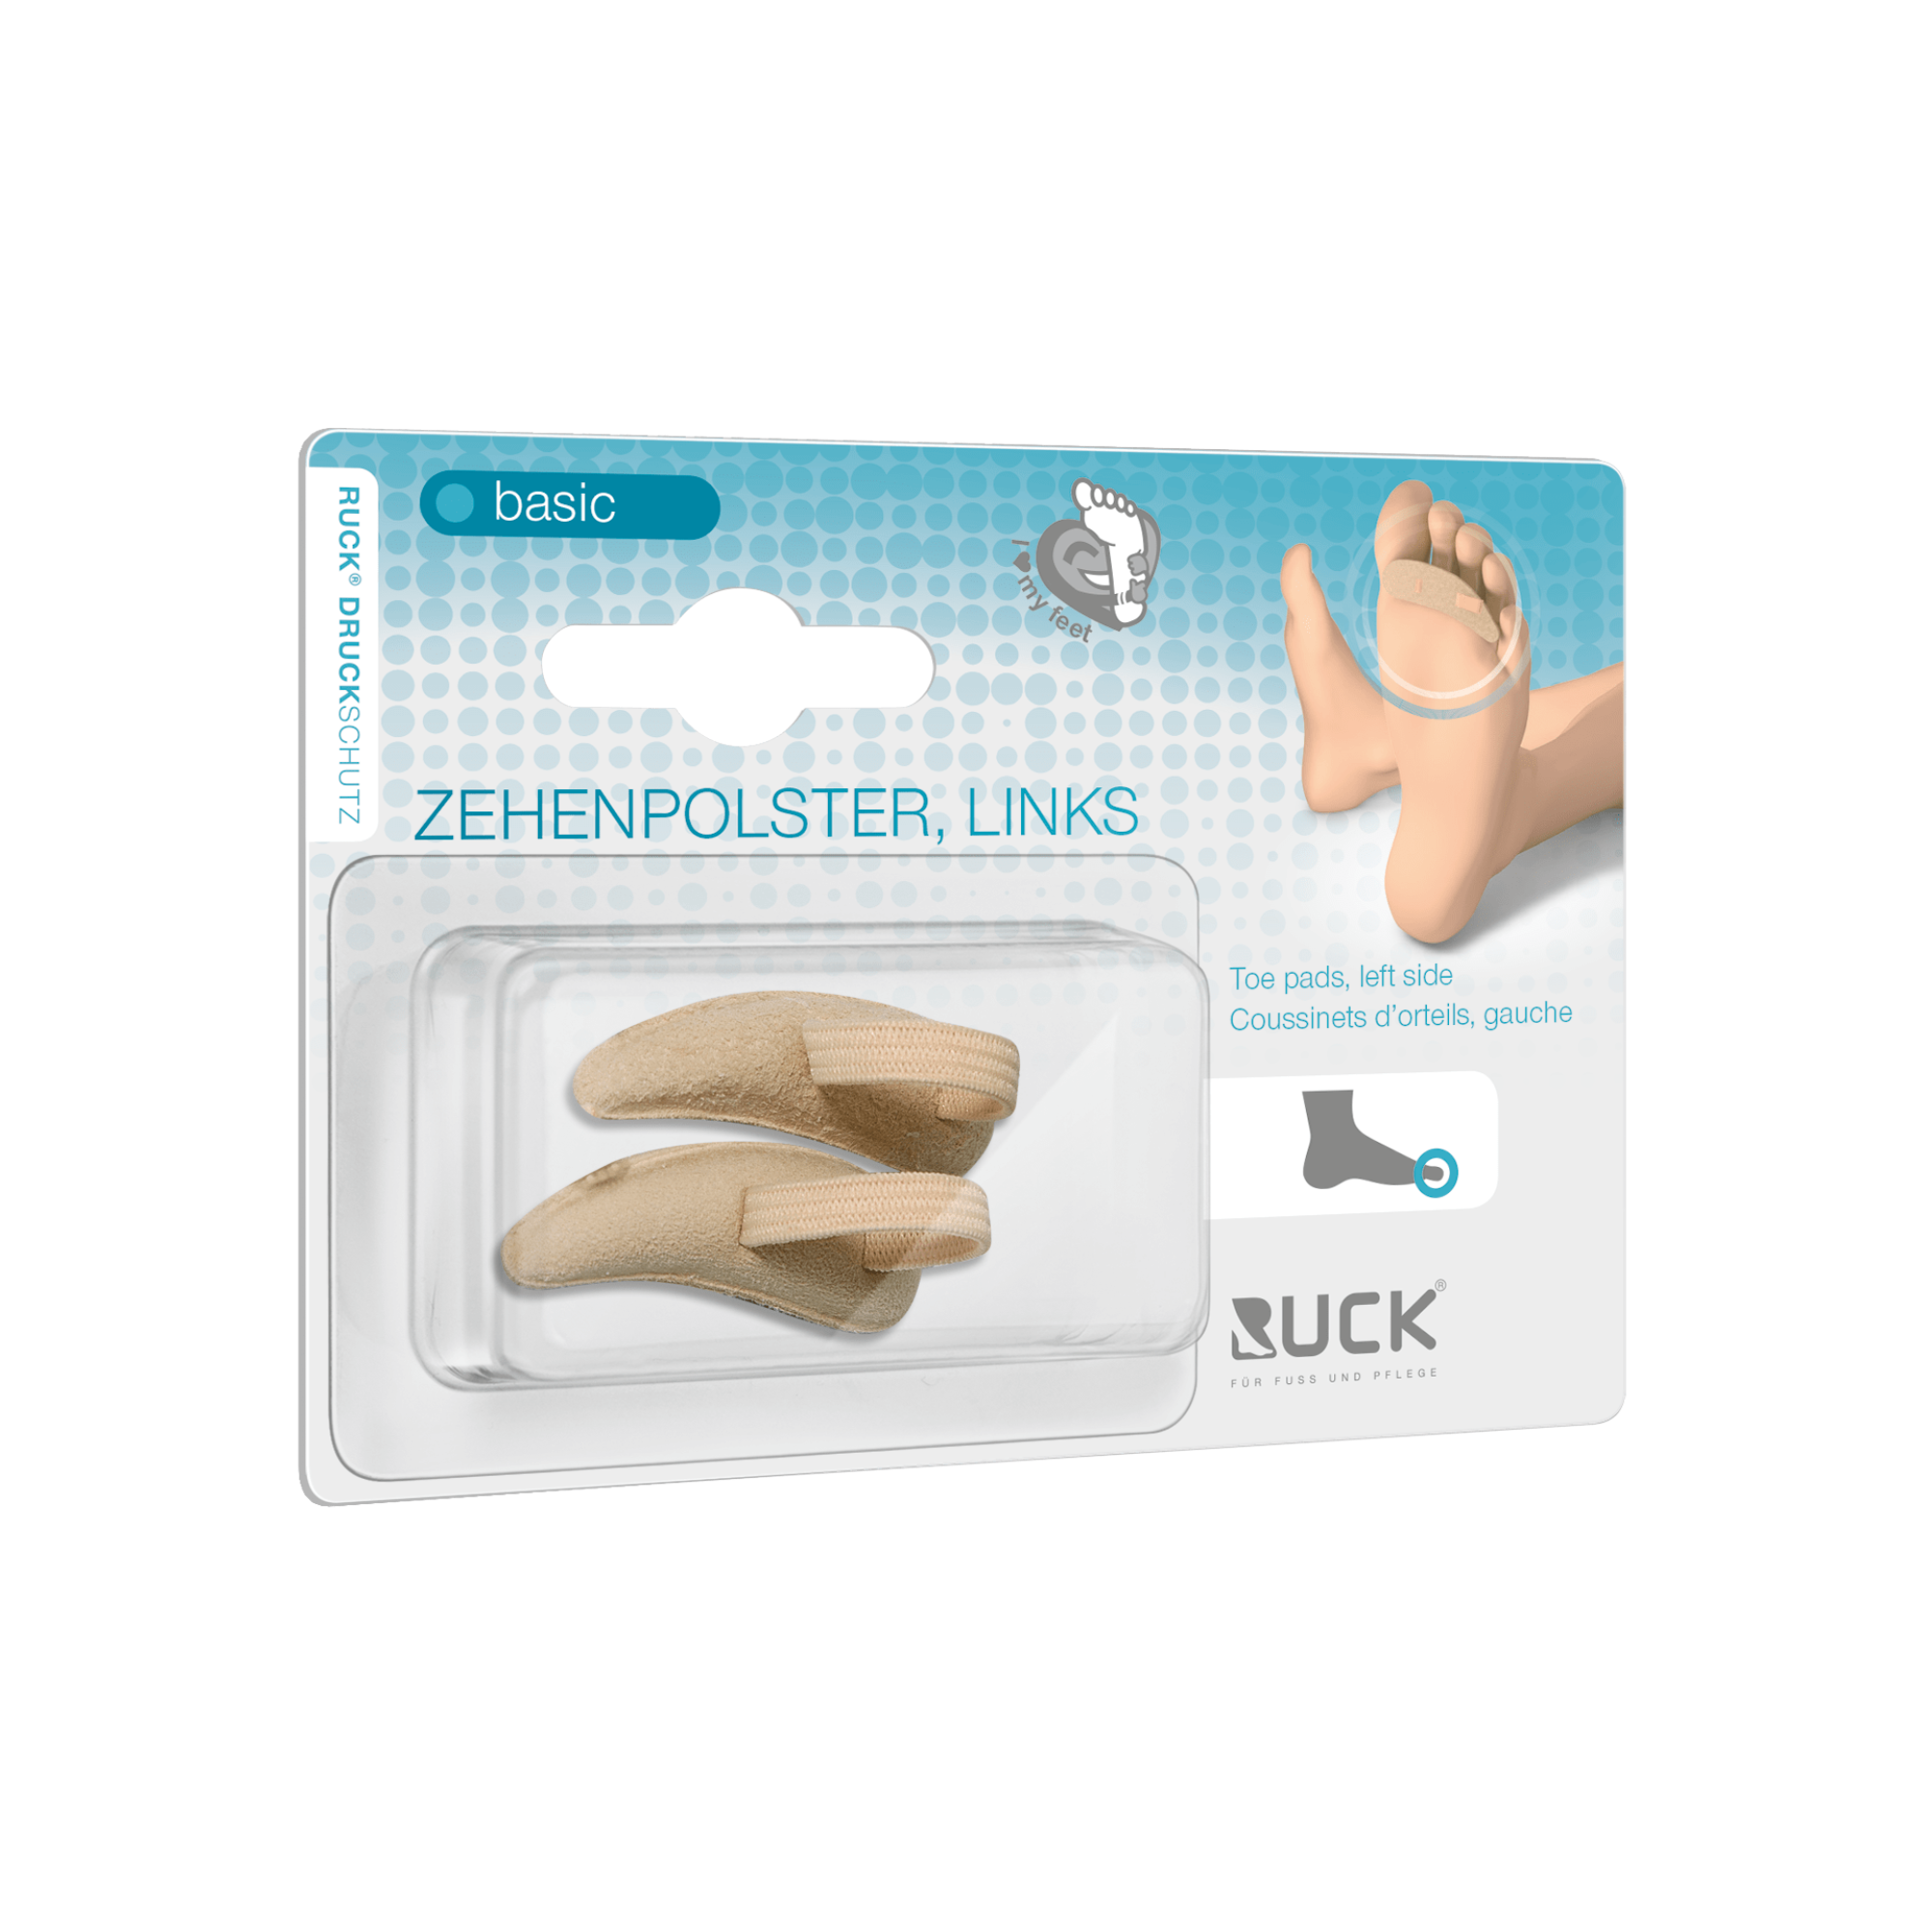 Protection pour orteils - Rembourrage en mousse souple recouvert de cuir - 3 tailles disponibles - 2 pièces - Ruck